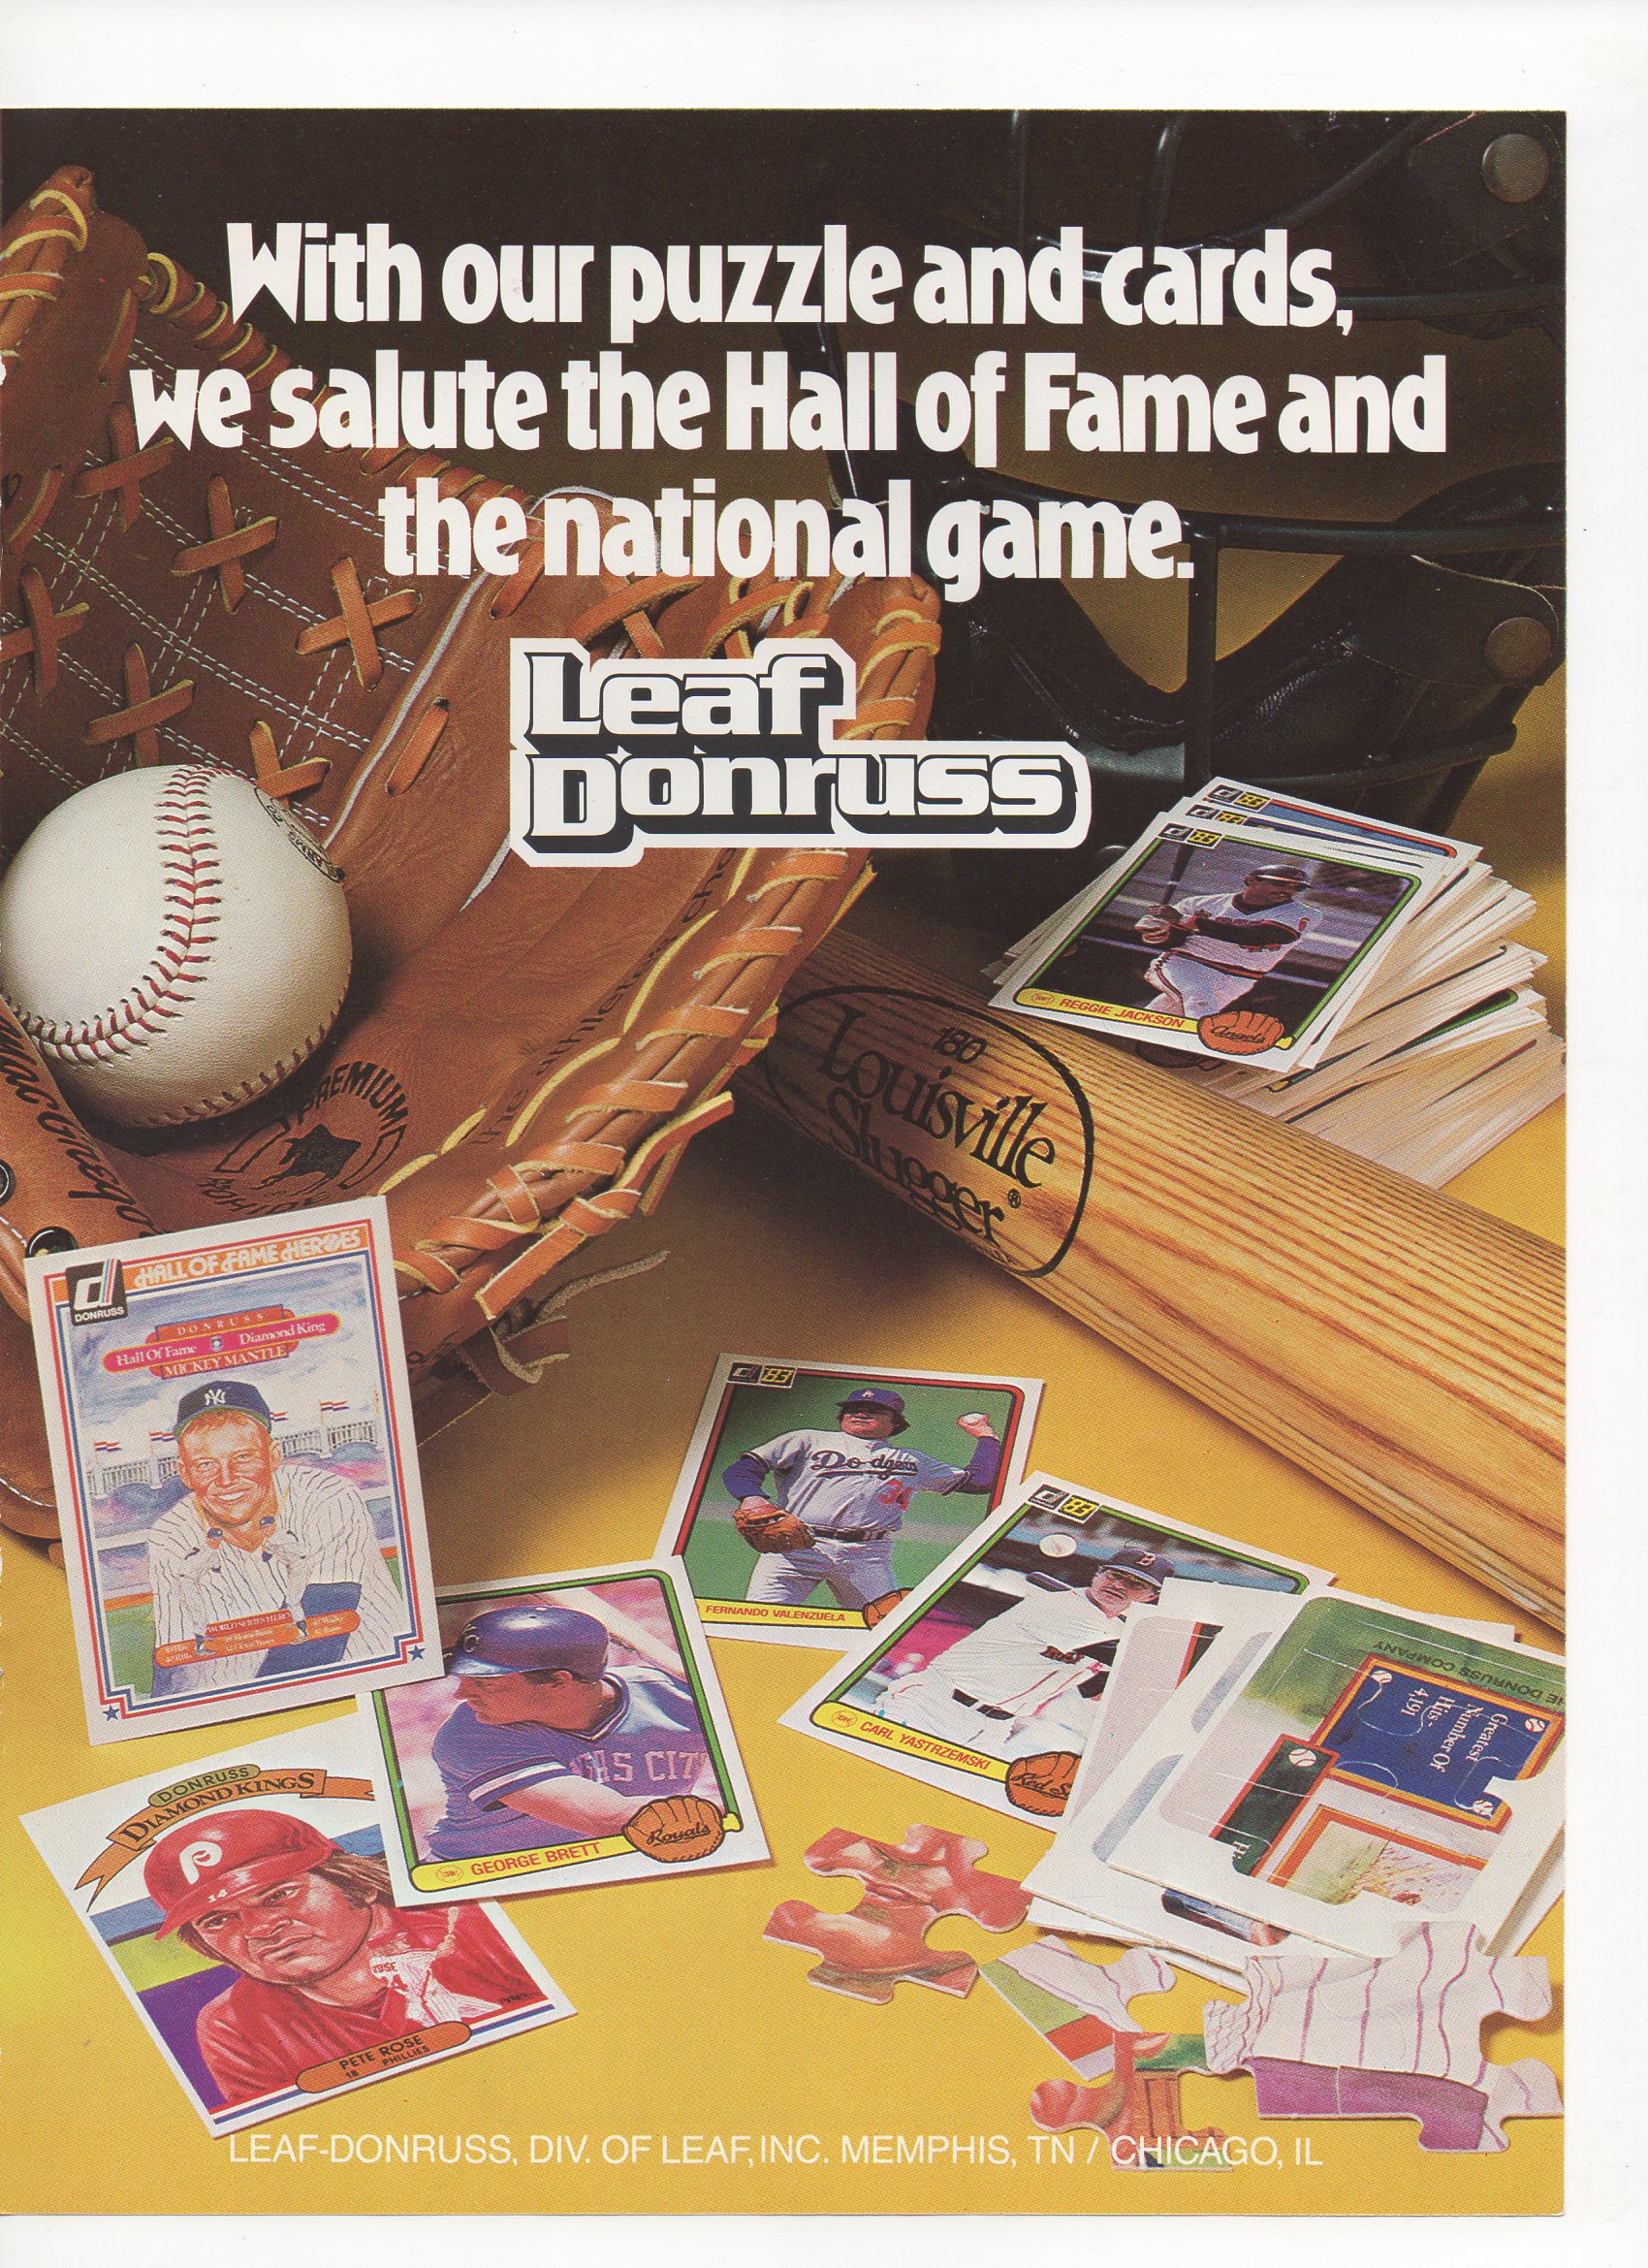 1985 baseball hall of fame magazine